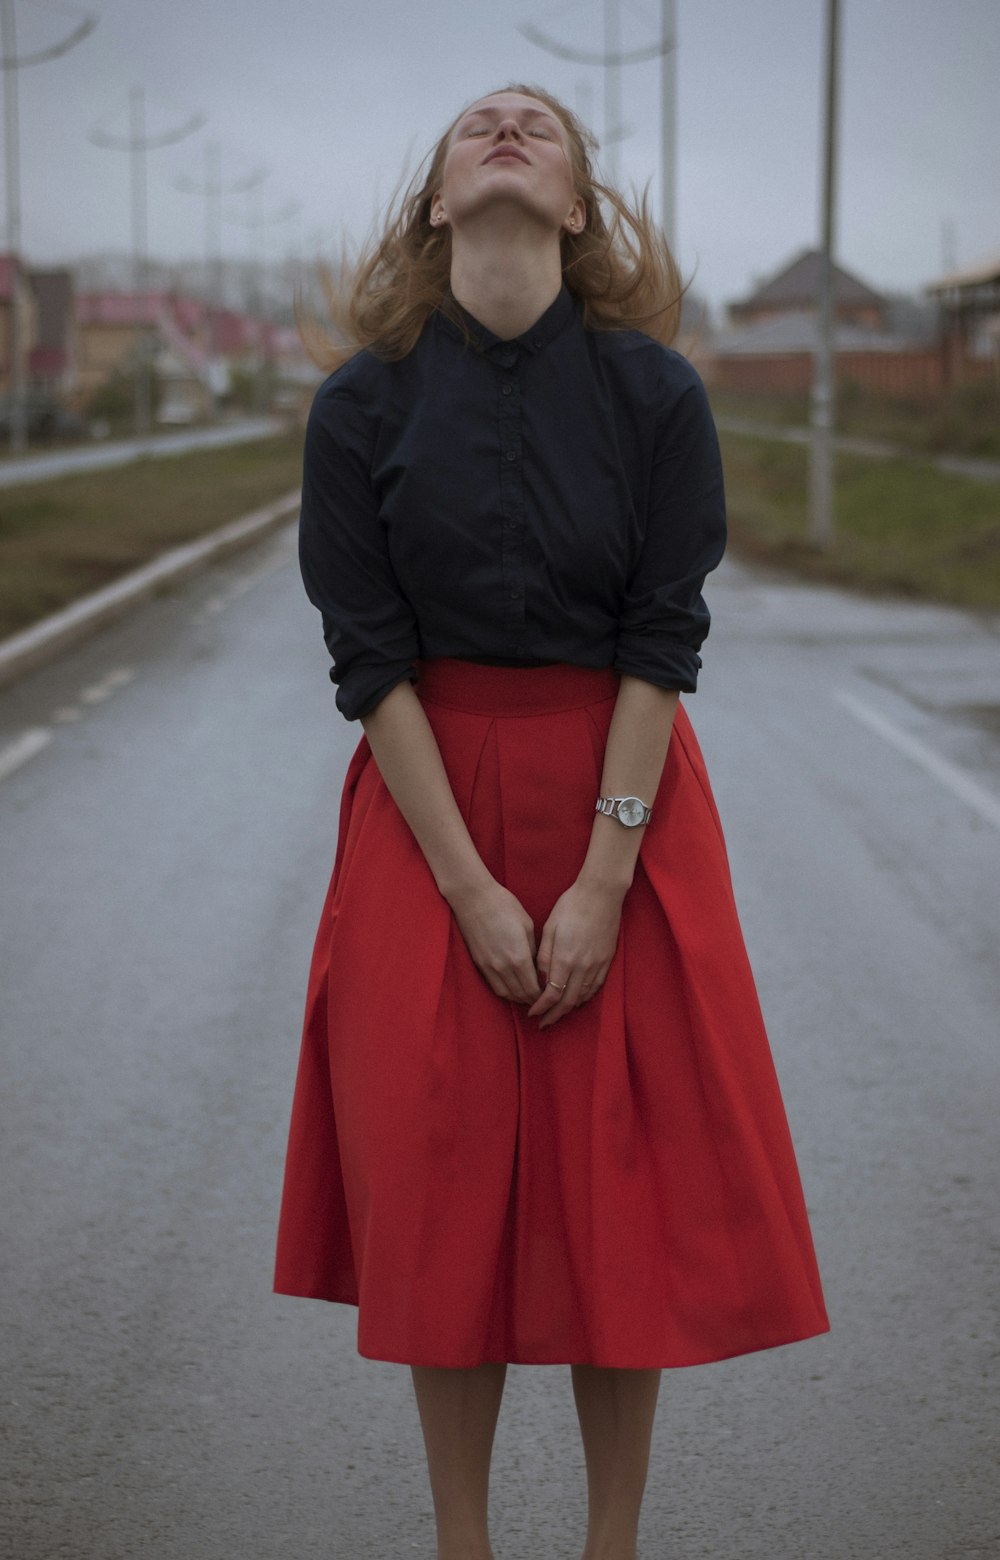 검은 드레스 셔츠와 빨간 긴 치마를 입고 있는 여자